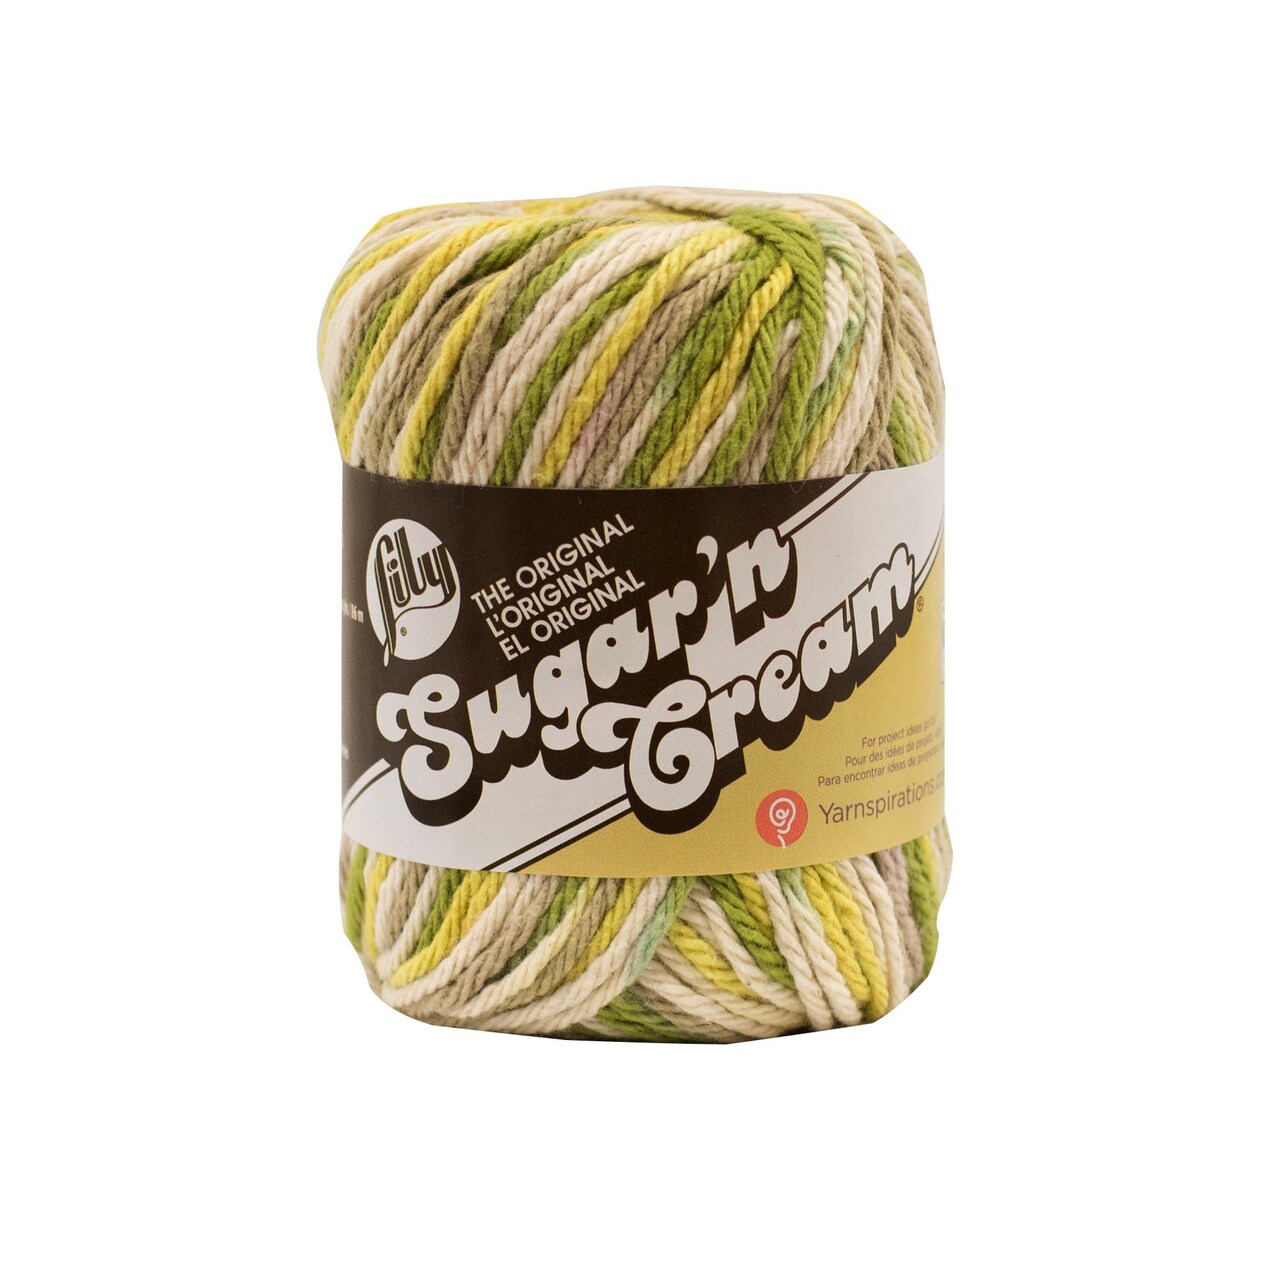 Lily Sugar'N Cream Guacamole Yarn - 6 Pack of 57g/2oz - Cotton - 4